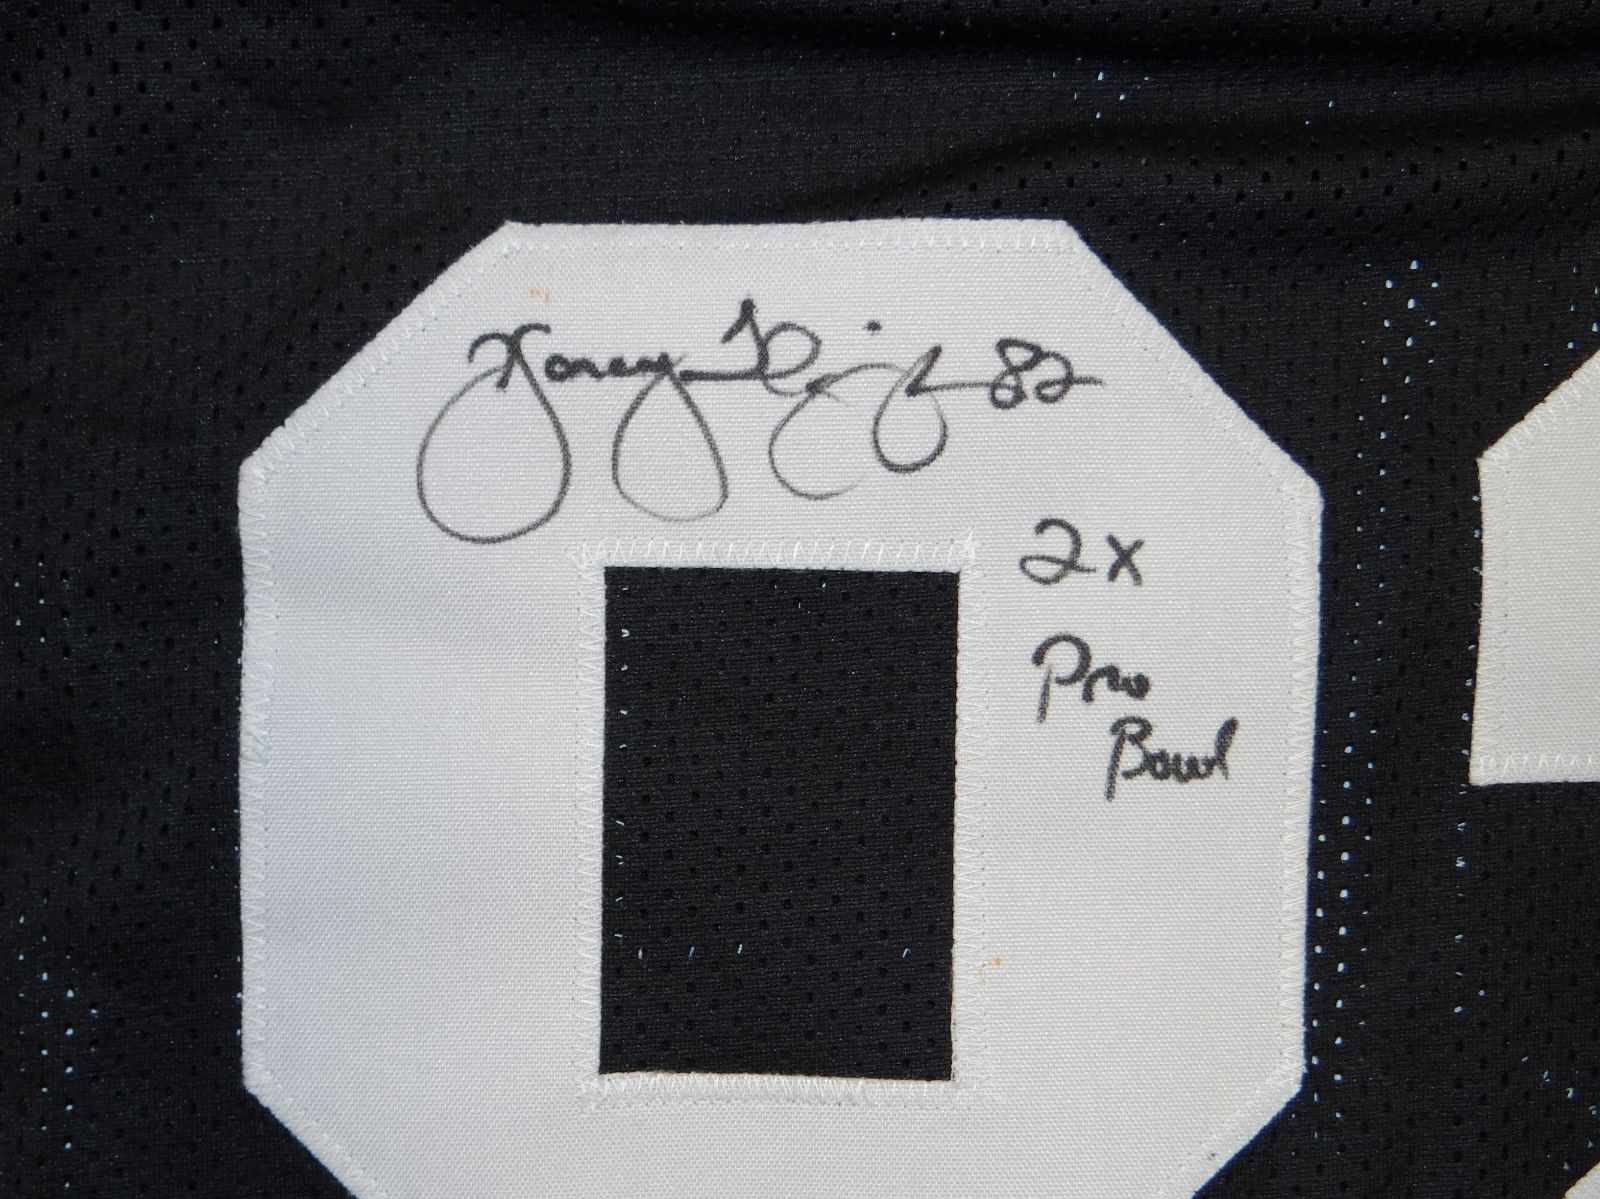 Yancey Thigpen Autographed Black Pro Style Jersey W/ 2x Pro Bowl